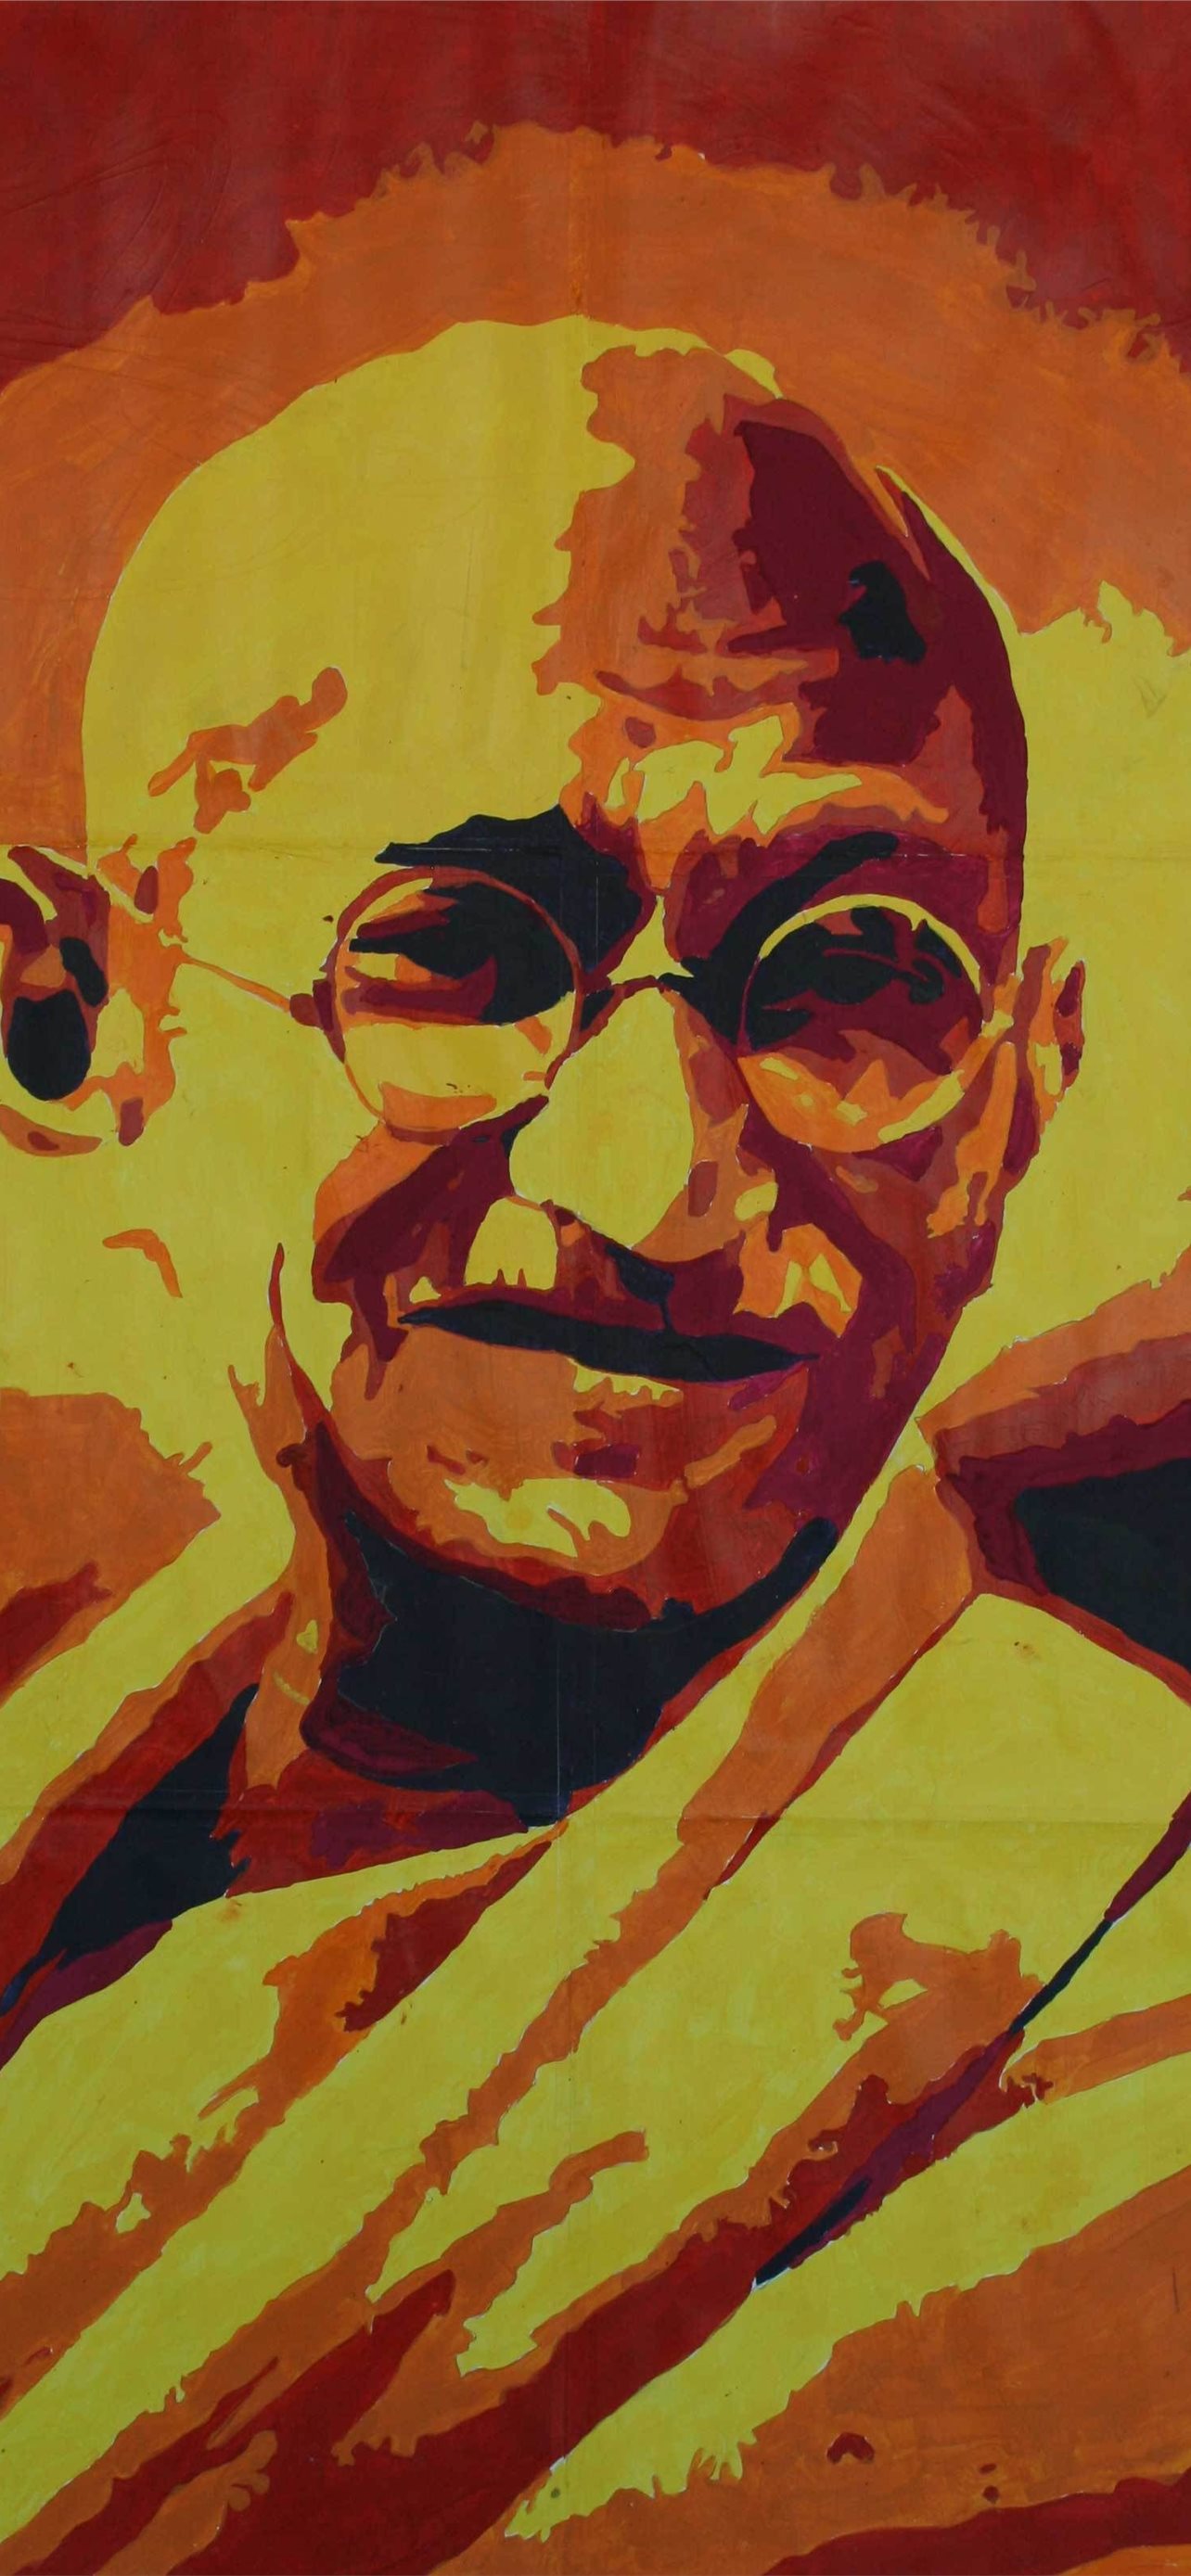 Best Mahatma gandhi iPhone HD Wallpapers - iLikeWallpaper